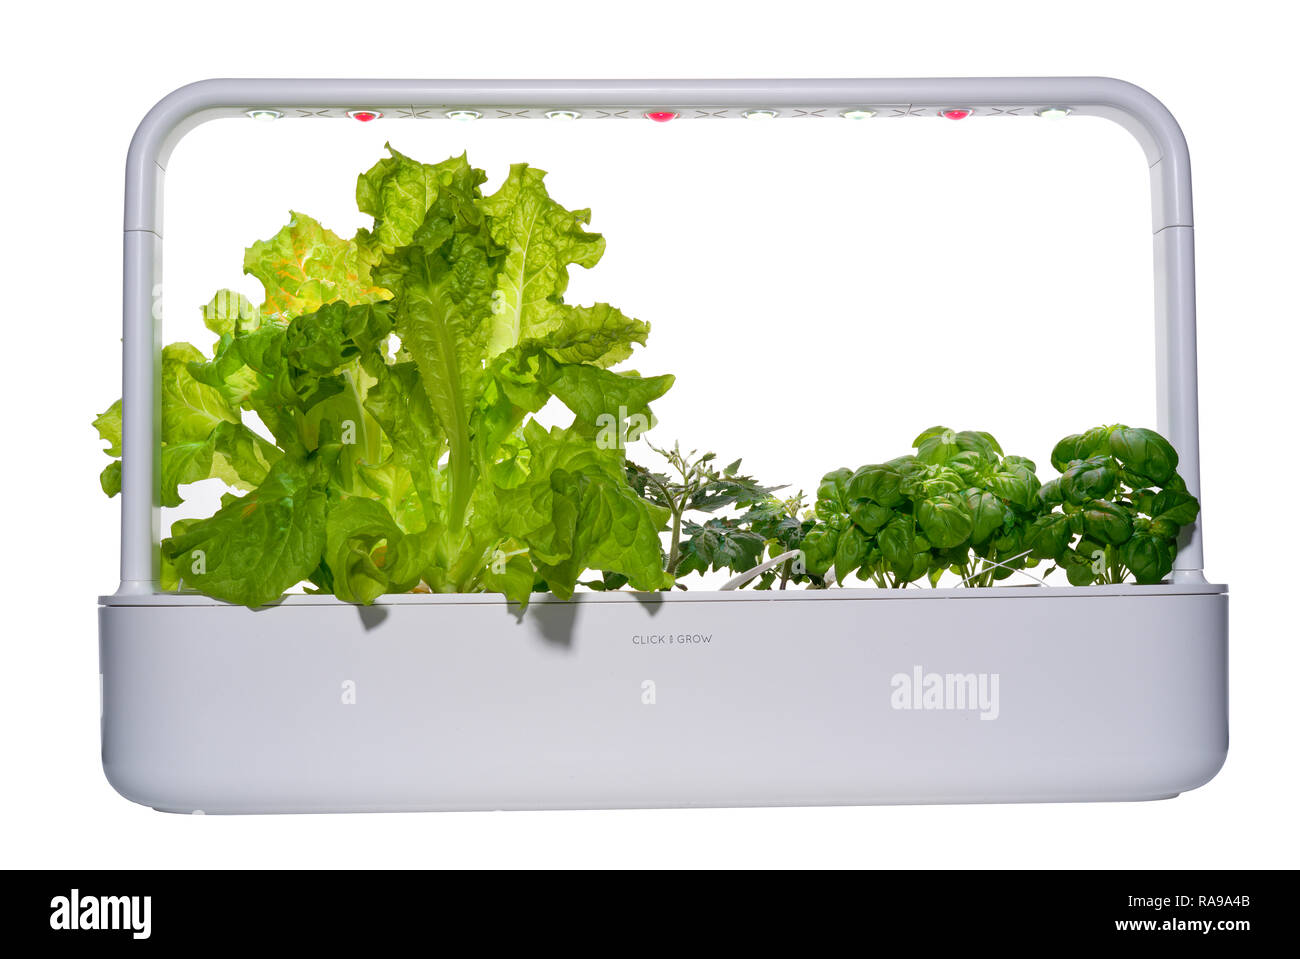 Smartgarden avec laitue, tomate et basilic plantes poussant sous des lumières DEL. Banque D'Images